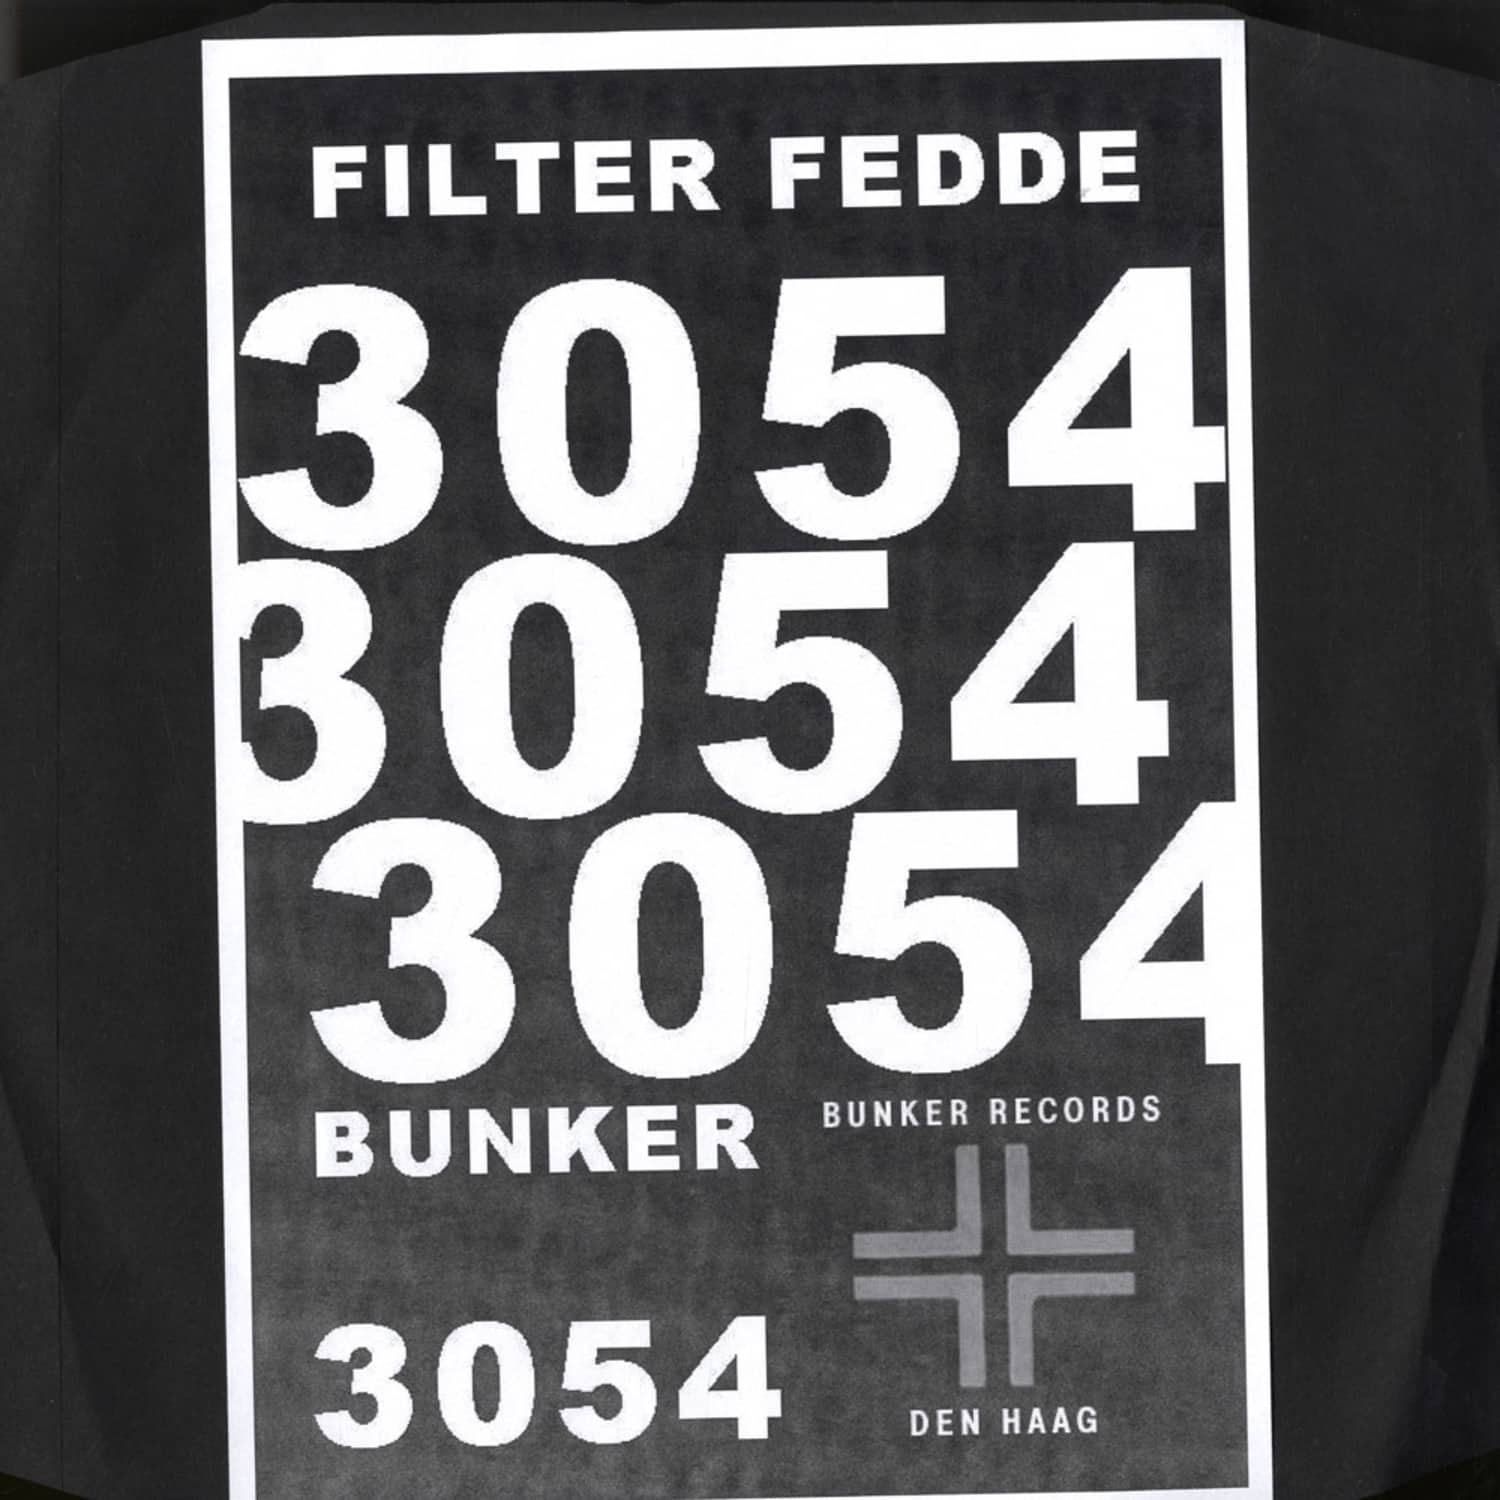 Filter Fedde - NUMBER 3